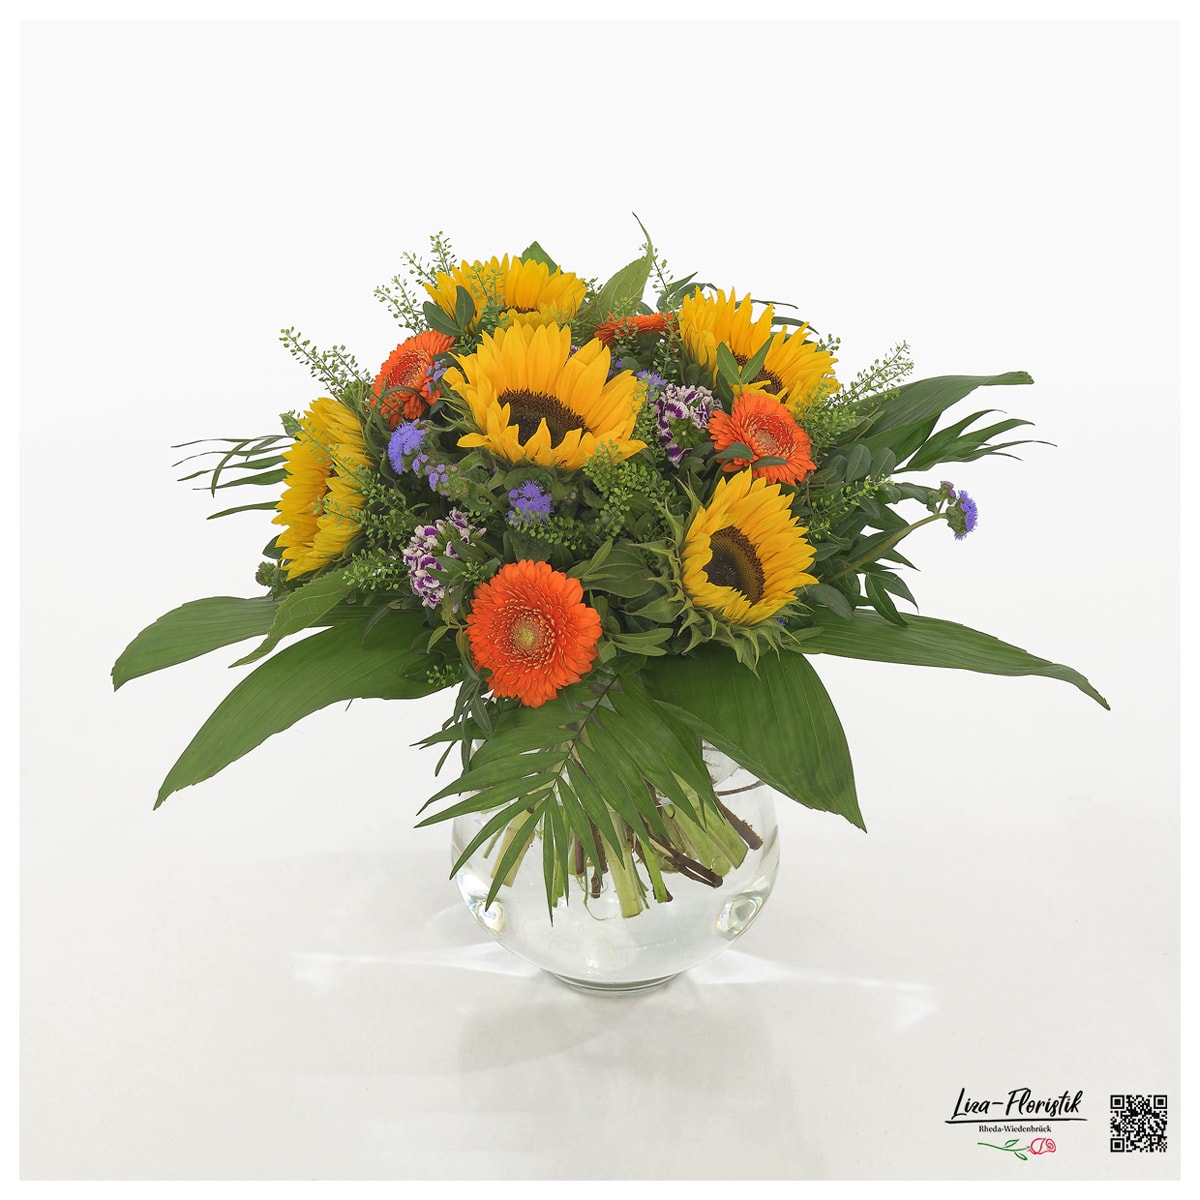 Blumenstrauß mit Sonnenblumen, Gerbera, Bartnelken, Thlaspi und Ageratum